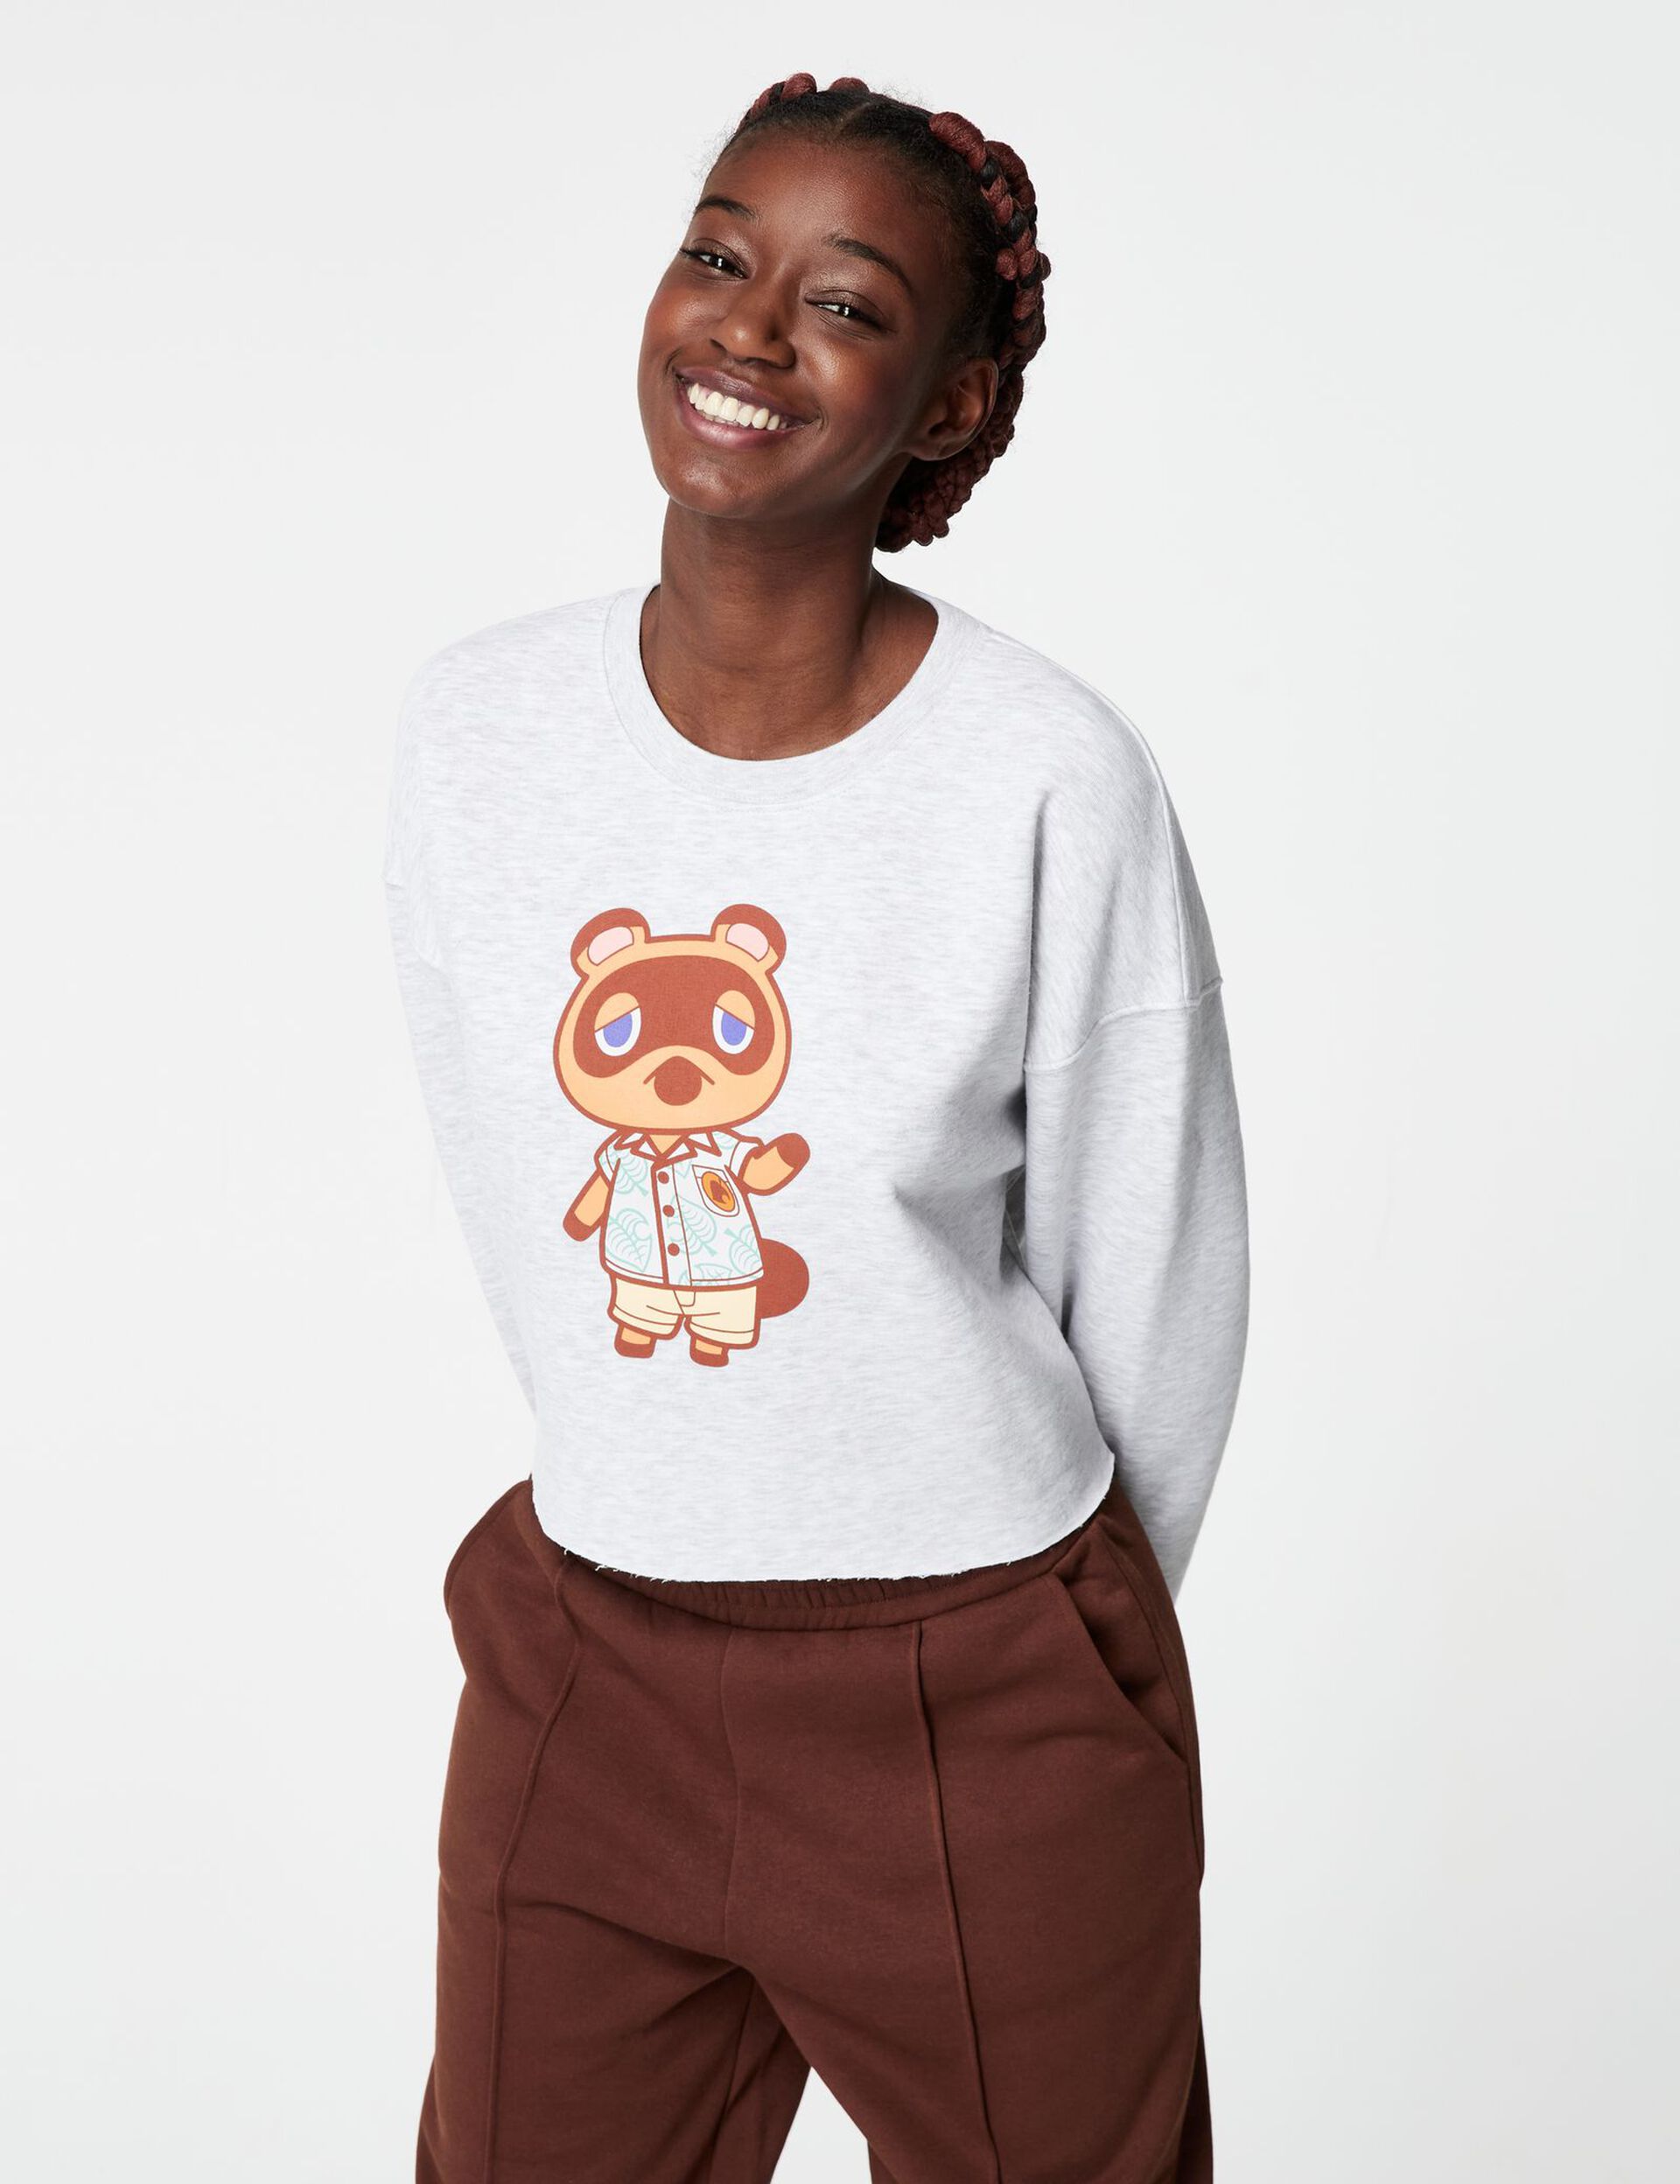 Animal Crossing sweatshirt